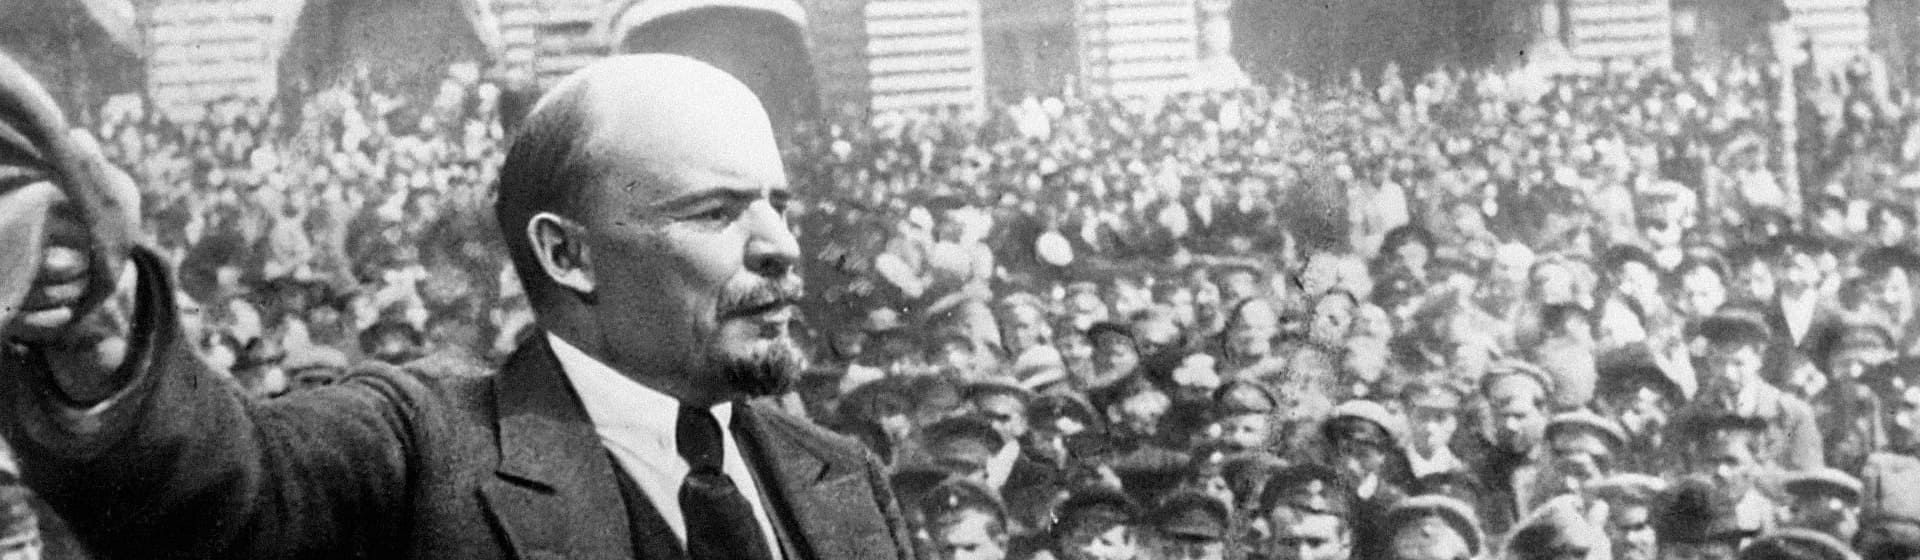 Владимир Ленин - Мерч и одежда с атрибутикой